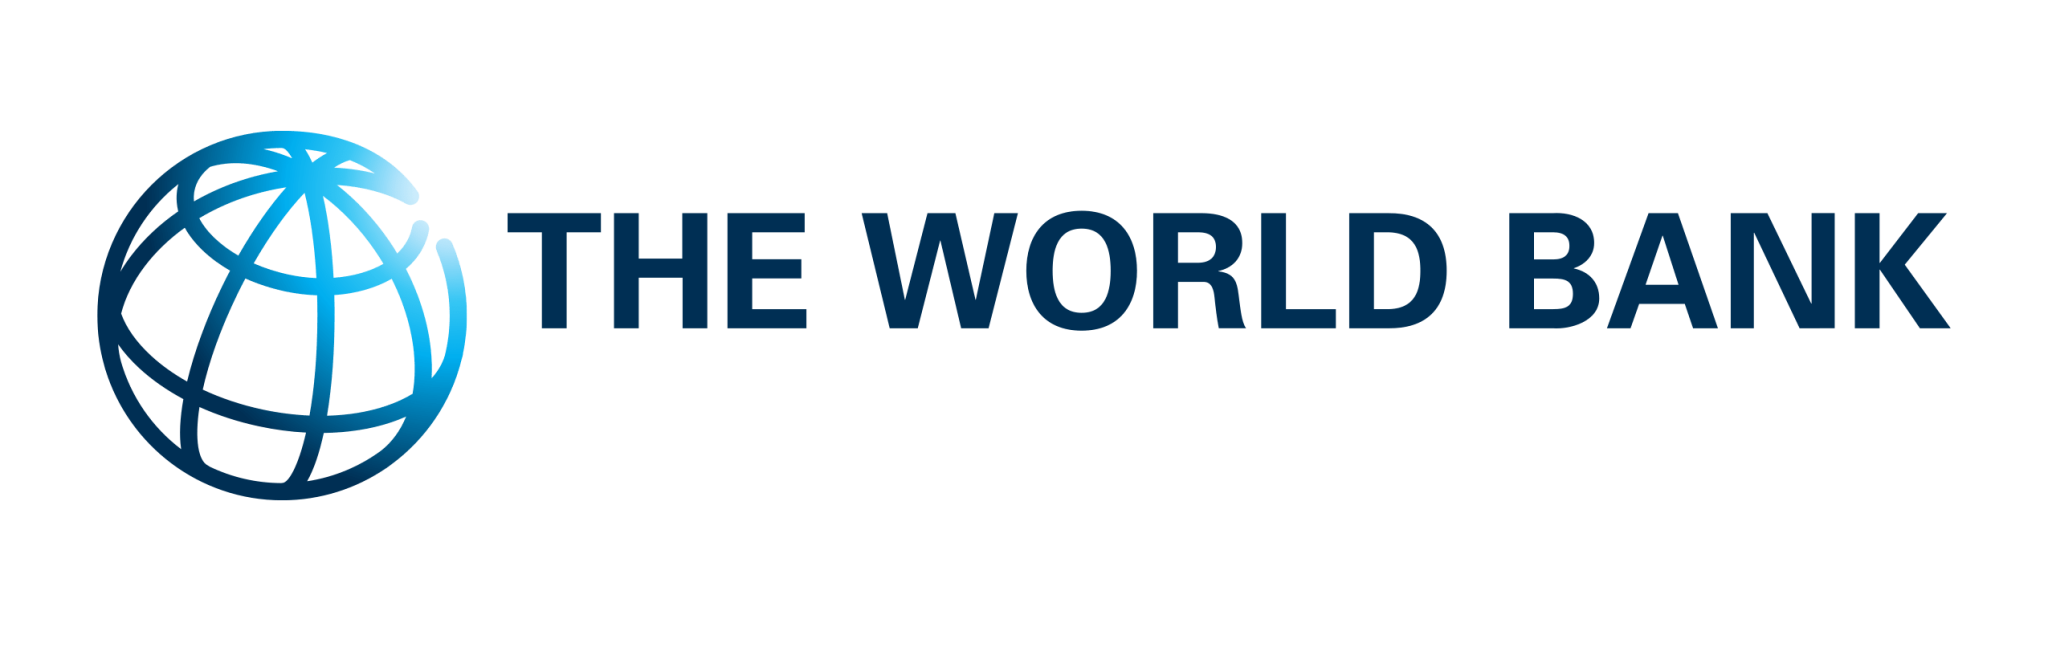 The World Bank. World Bank Group. Логотип Всемирного банка. Всемирные банки.